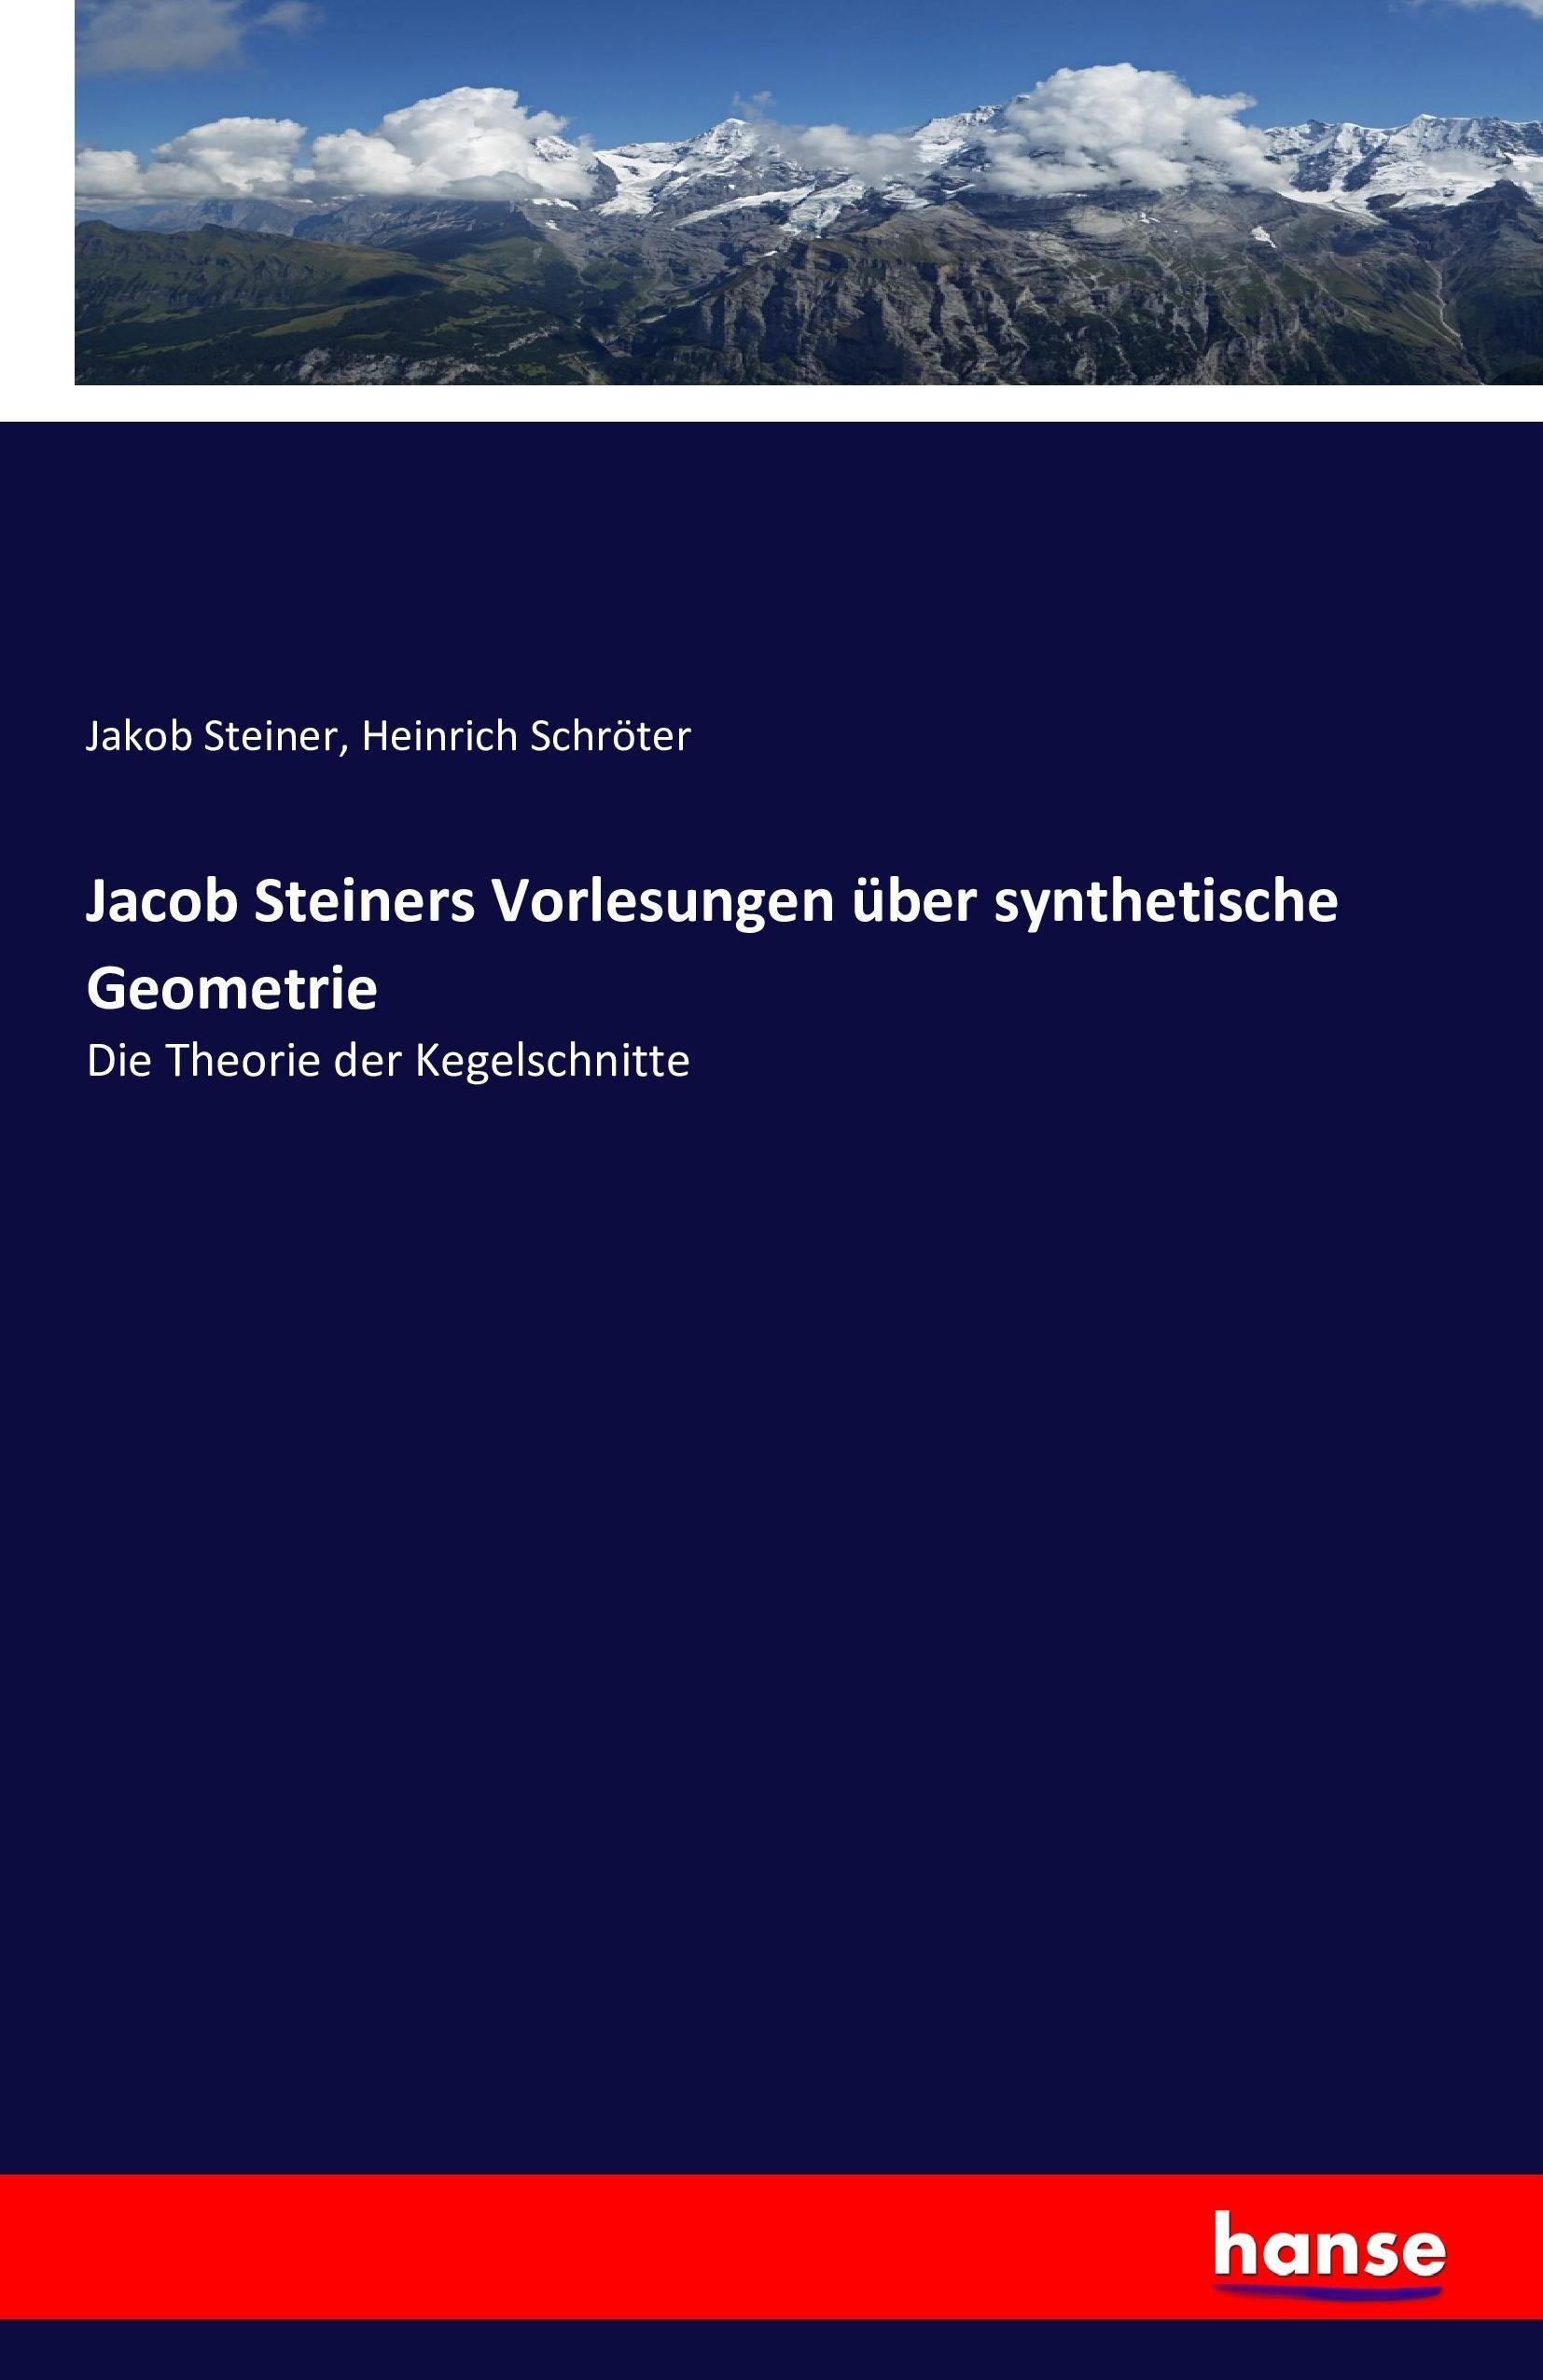 Jacob Steiners Vorlesungen ueber synthetische Geometrie - Steiner, Jakob Schroeter, Heinrich